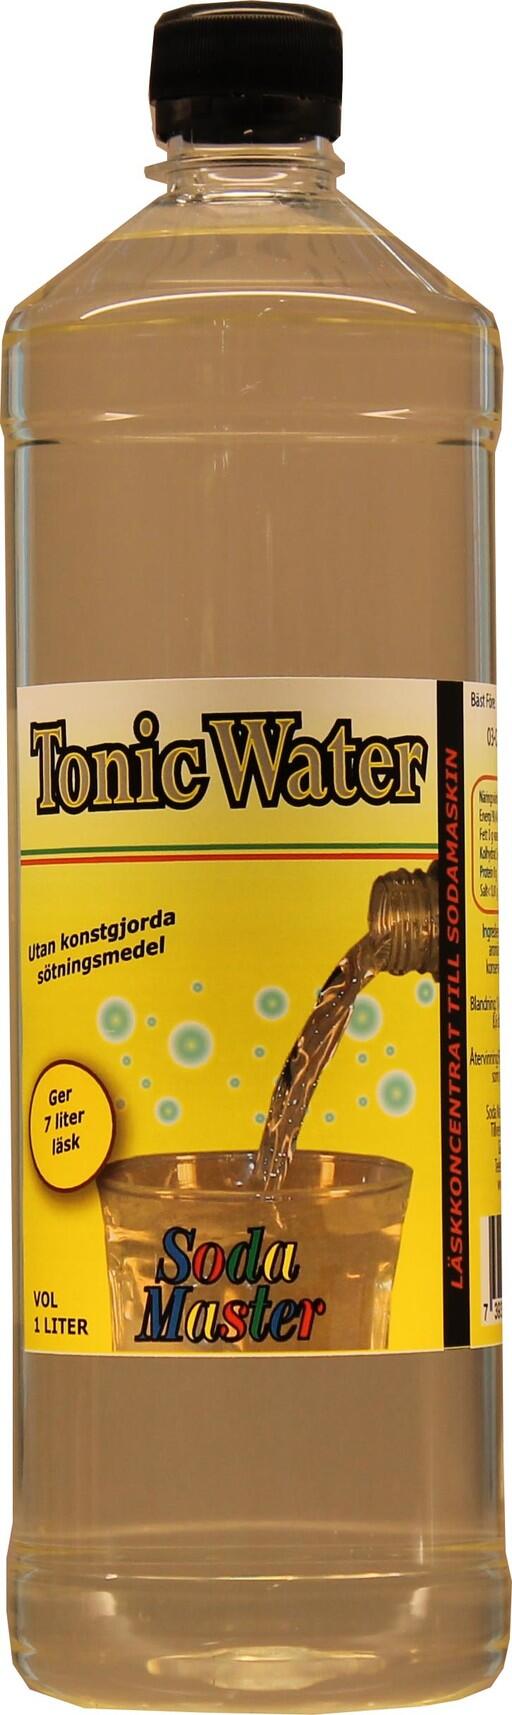 Tonic water läskkoncentrat.